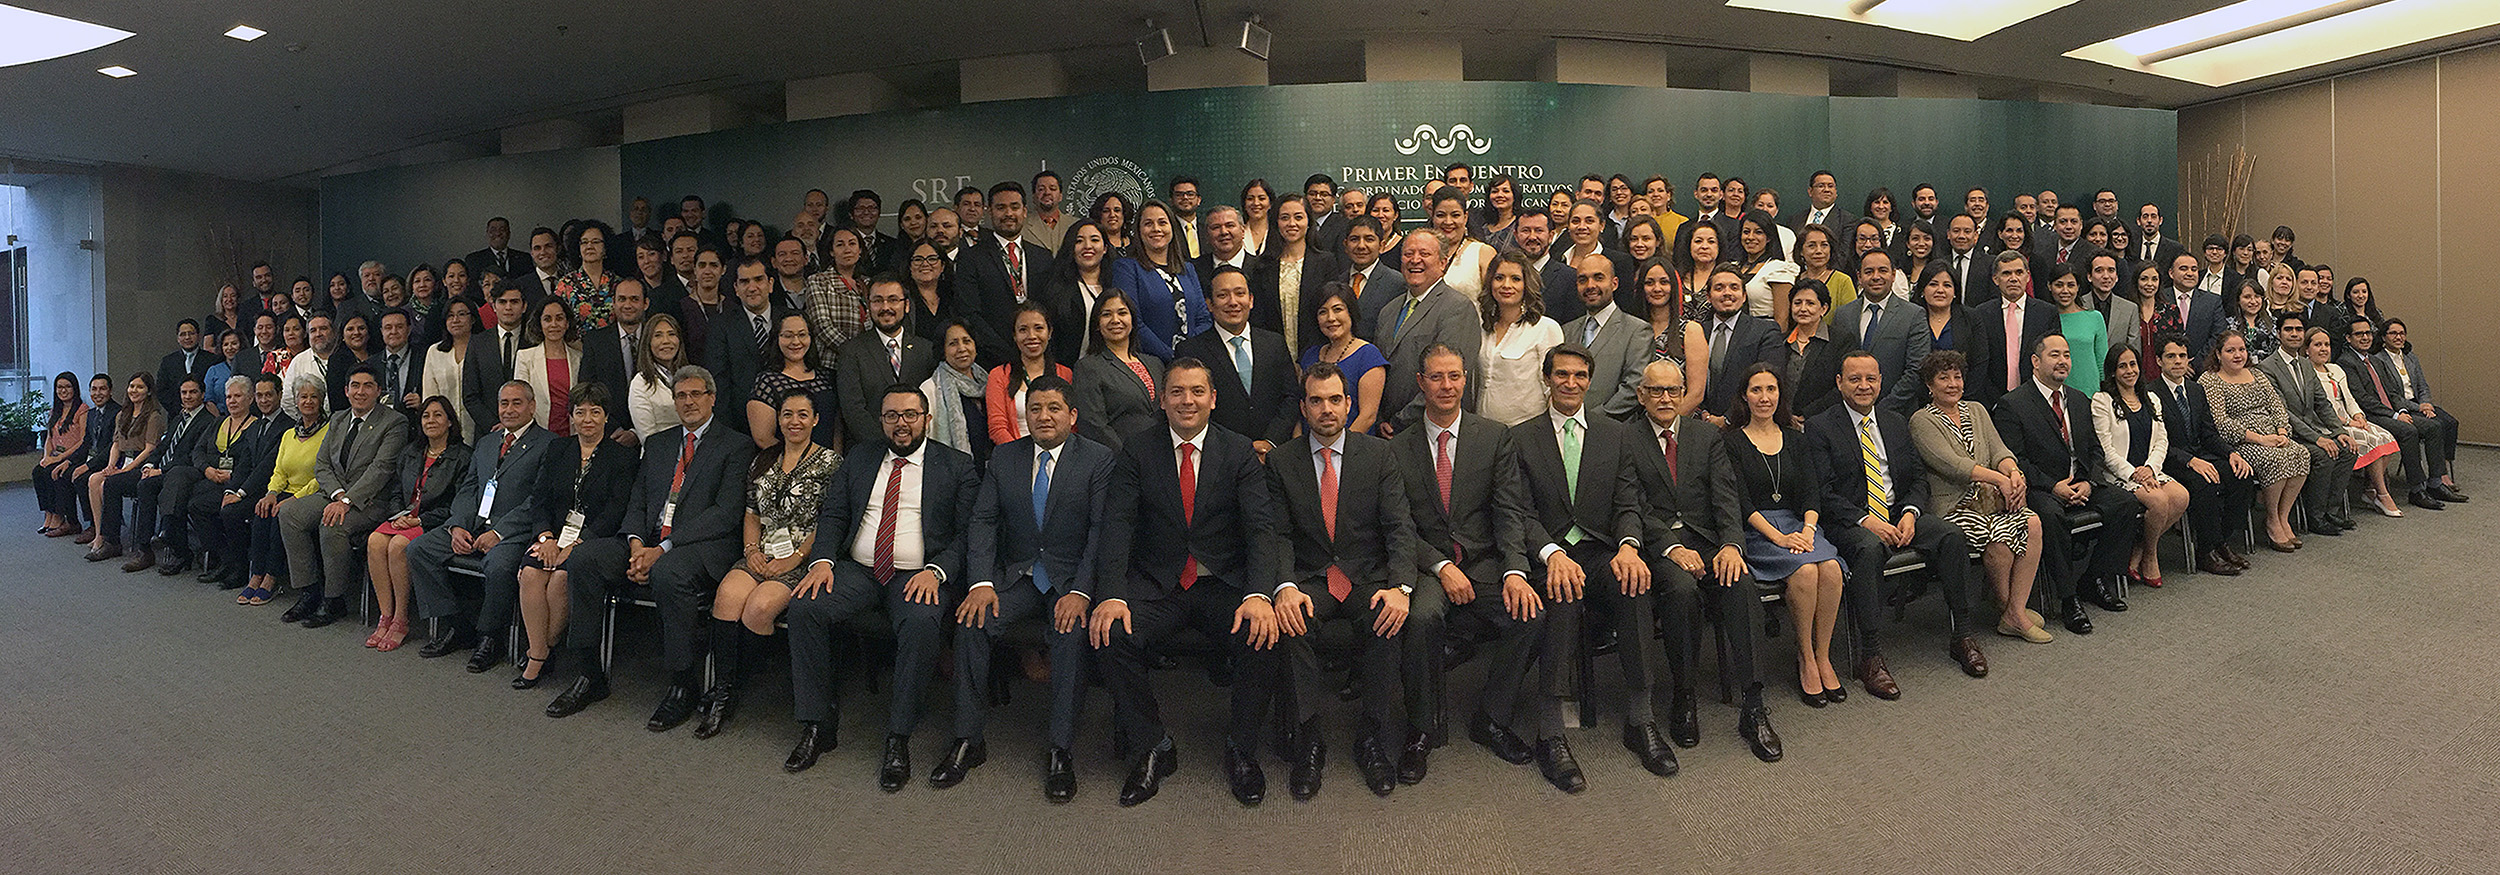 Foto de grupo del 1er Encuentro de Coordinadores Administrativos del Servicio Exterior Mexicano.
